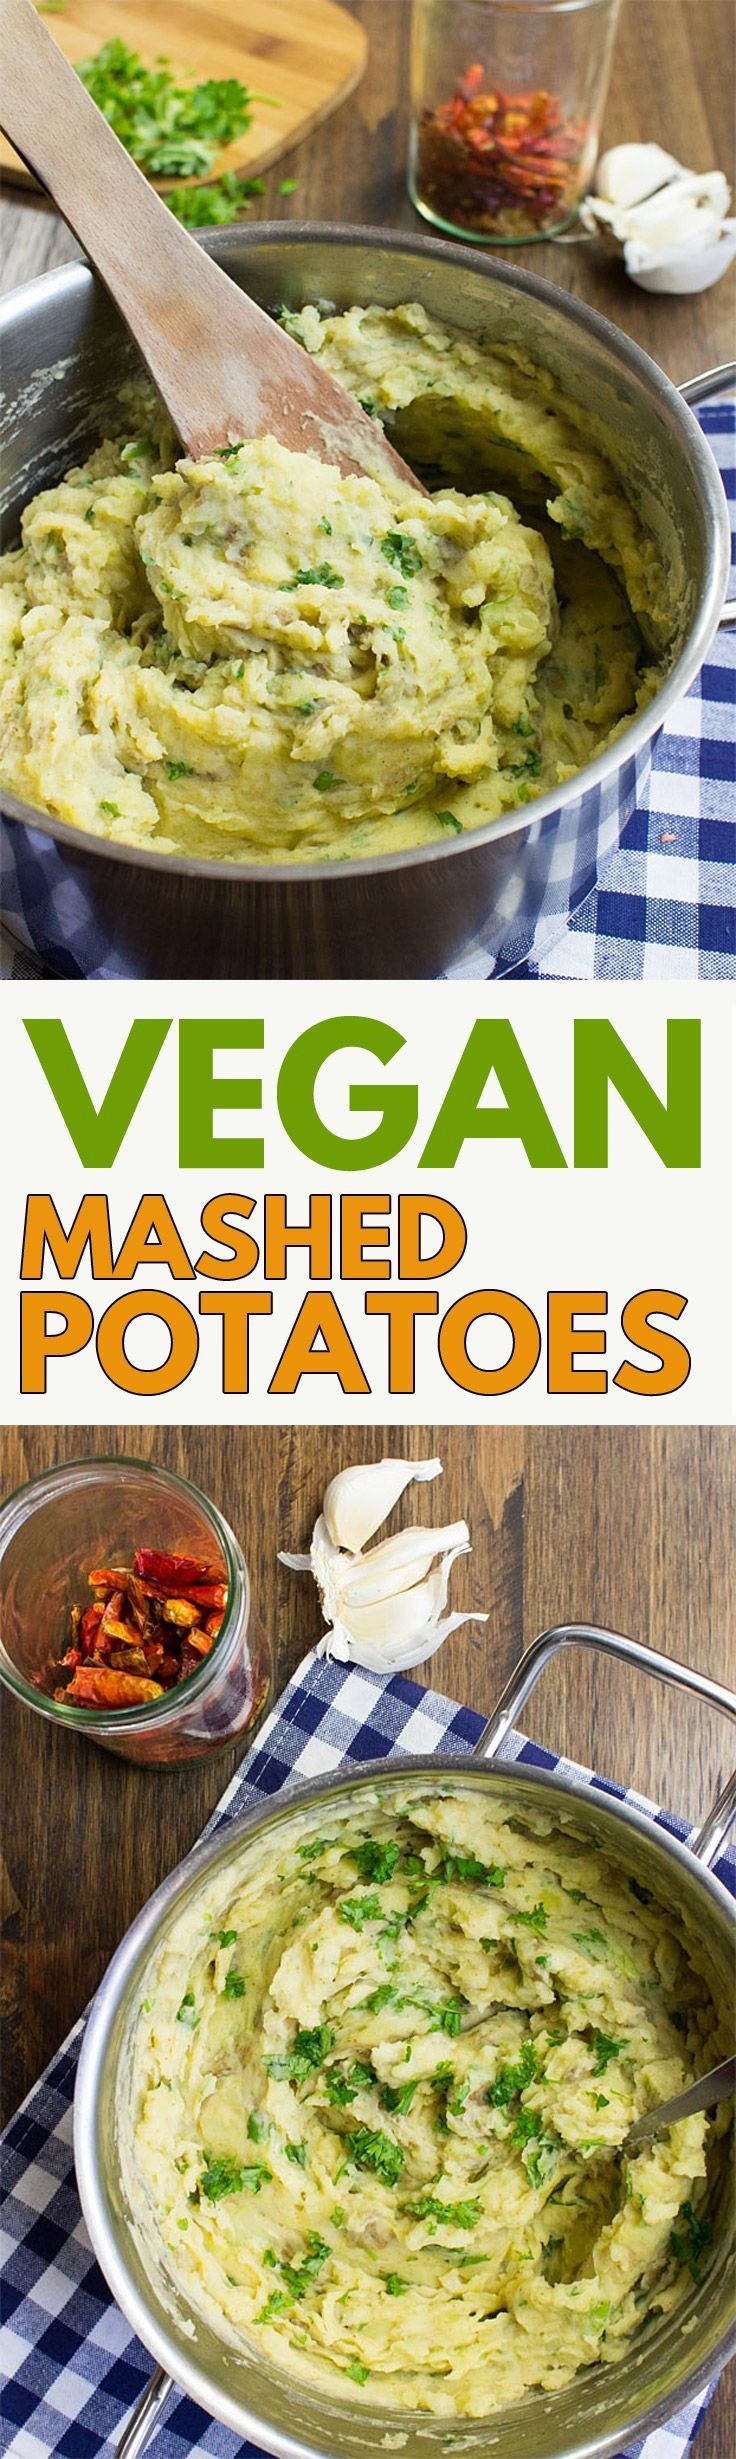 Best Vegan Mashed Potatoes
 Vegan Mashed Potatoes Recipe